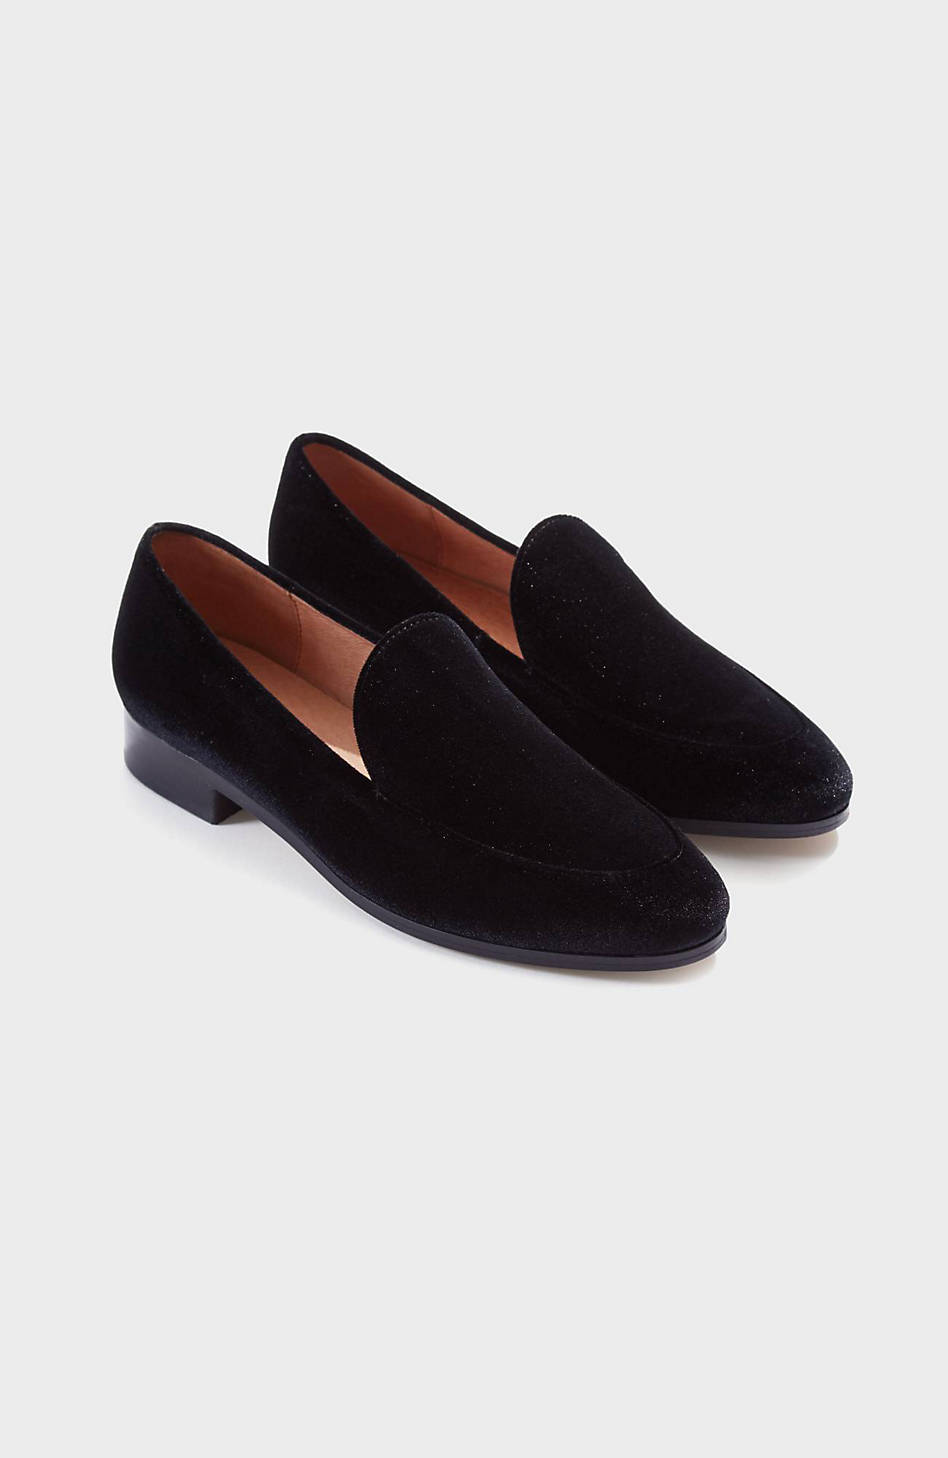 black velvet slippers womens